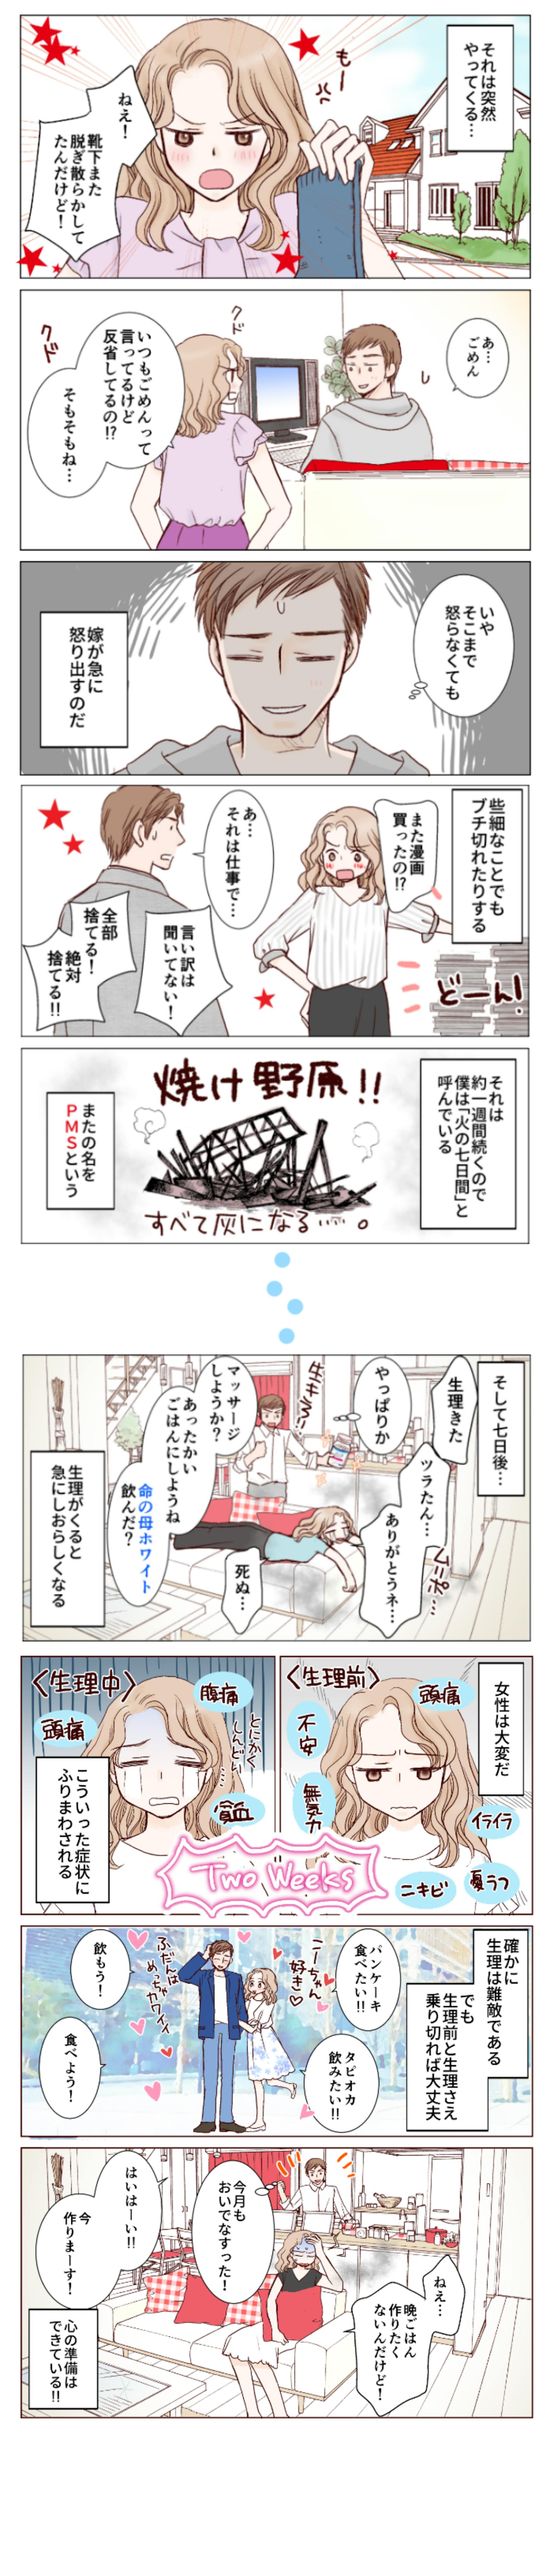 ルナルナ×小林製薬広告漫画-2